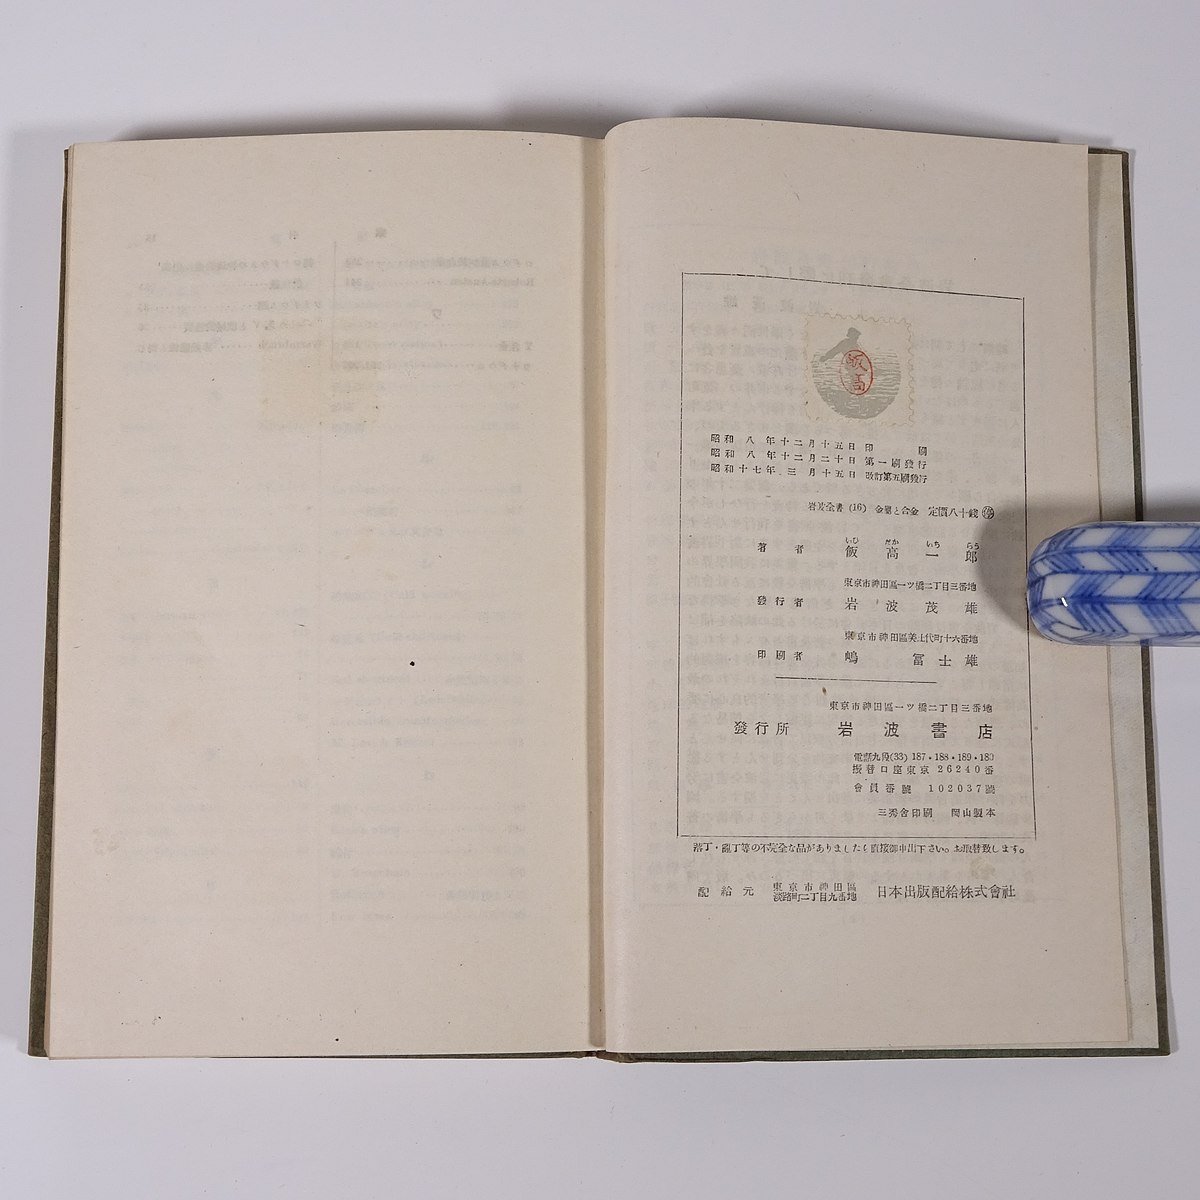  модифицировано . металл . сплав . высота один . Iwanami все документ Iwanami книжный магазин Showa один 7 год 1942 старинная книга . ввод монография химия 